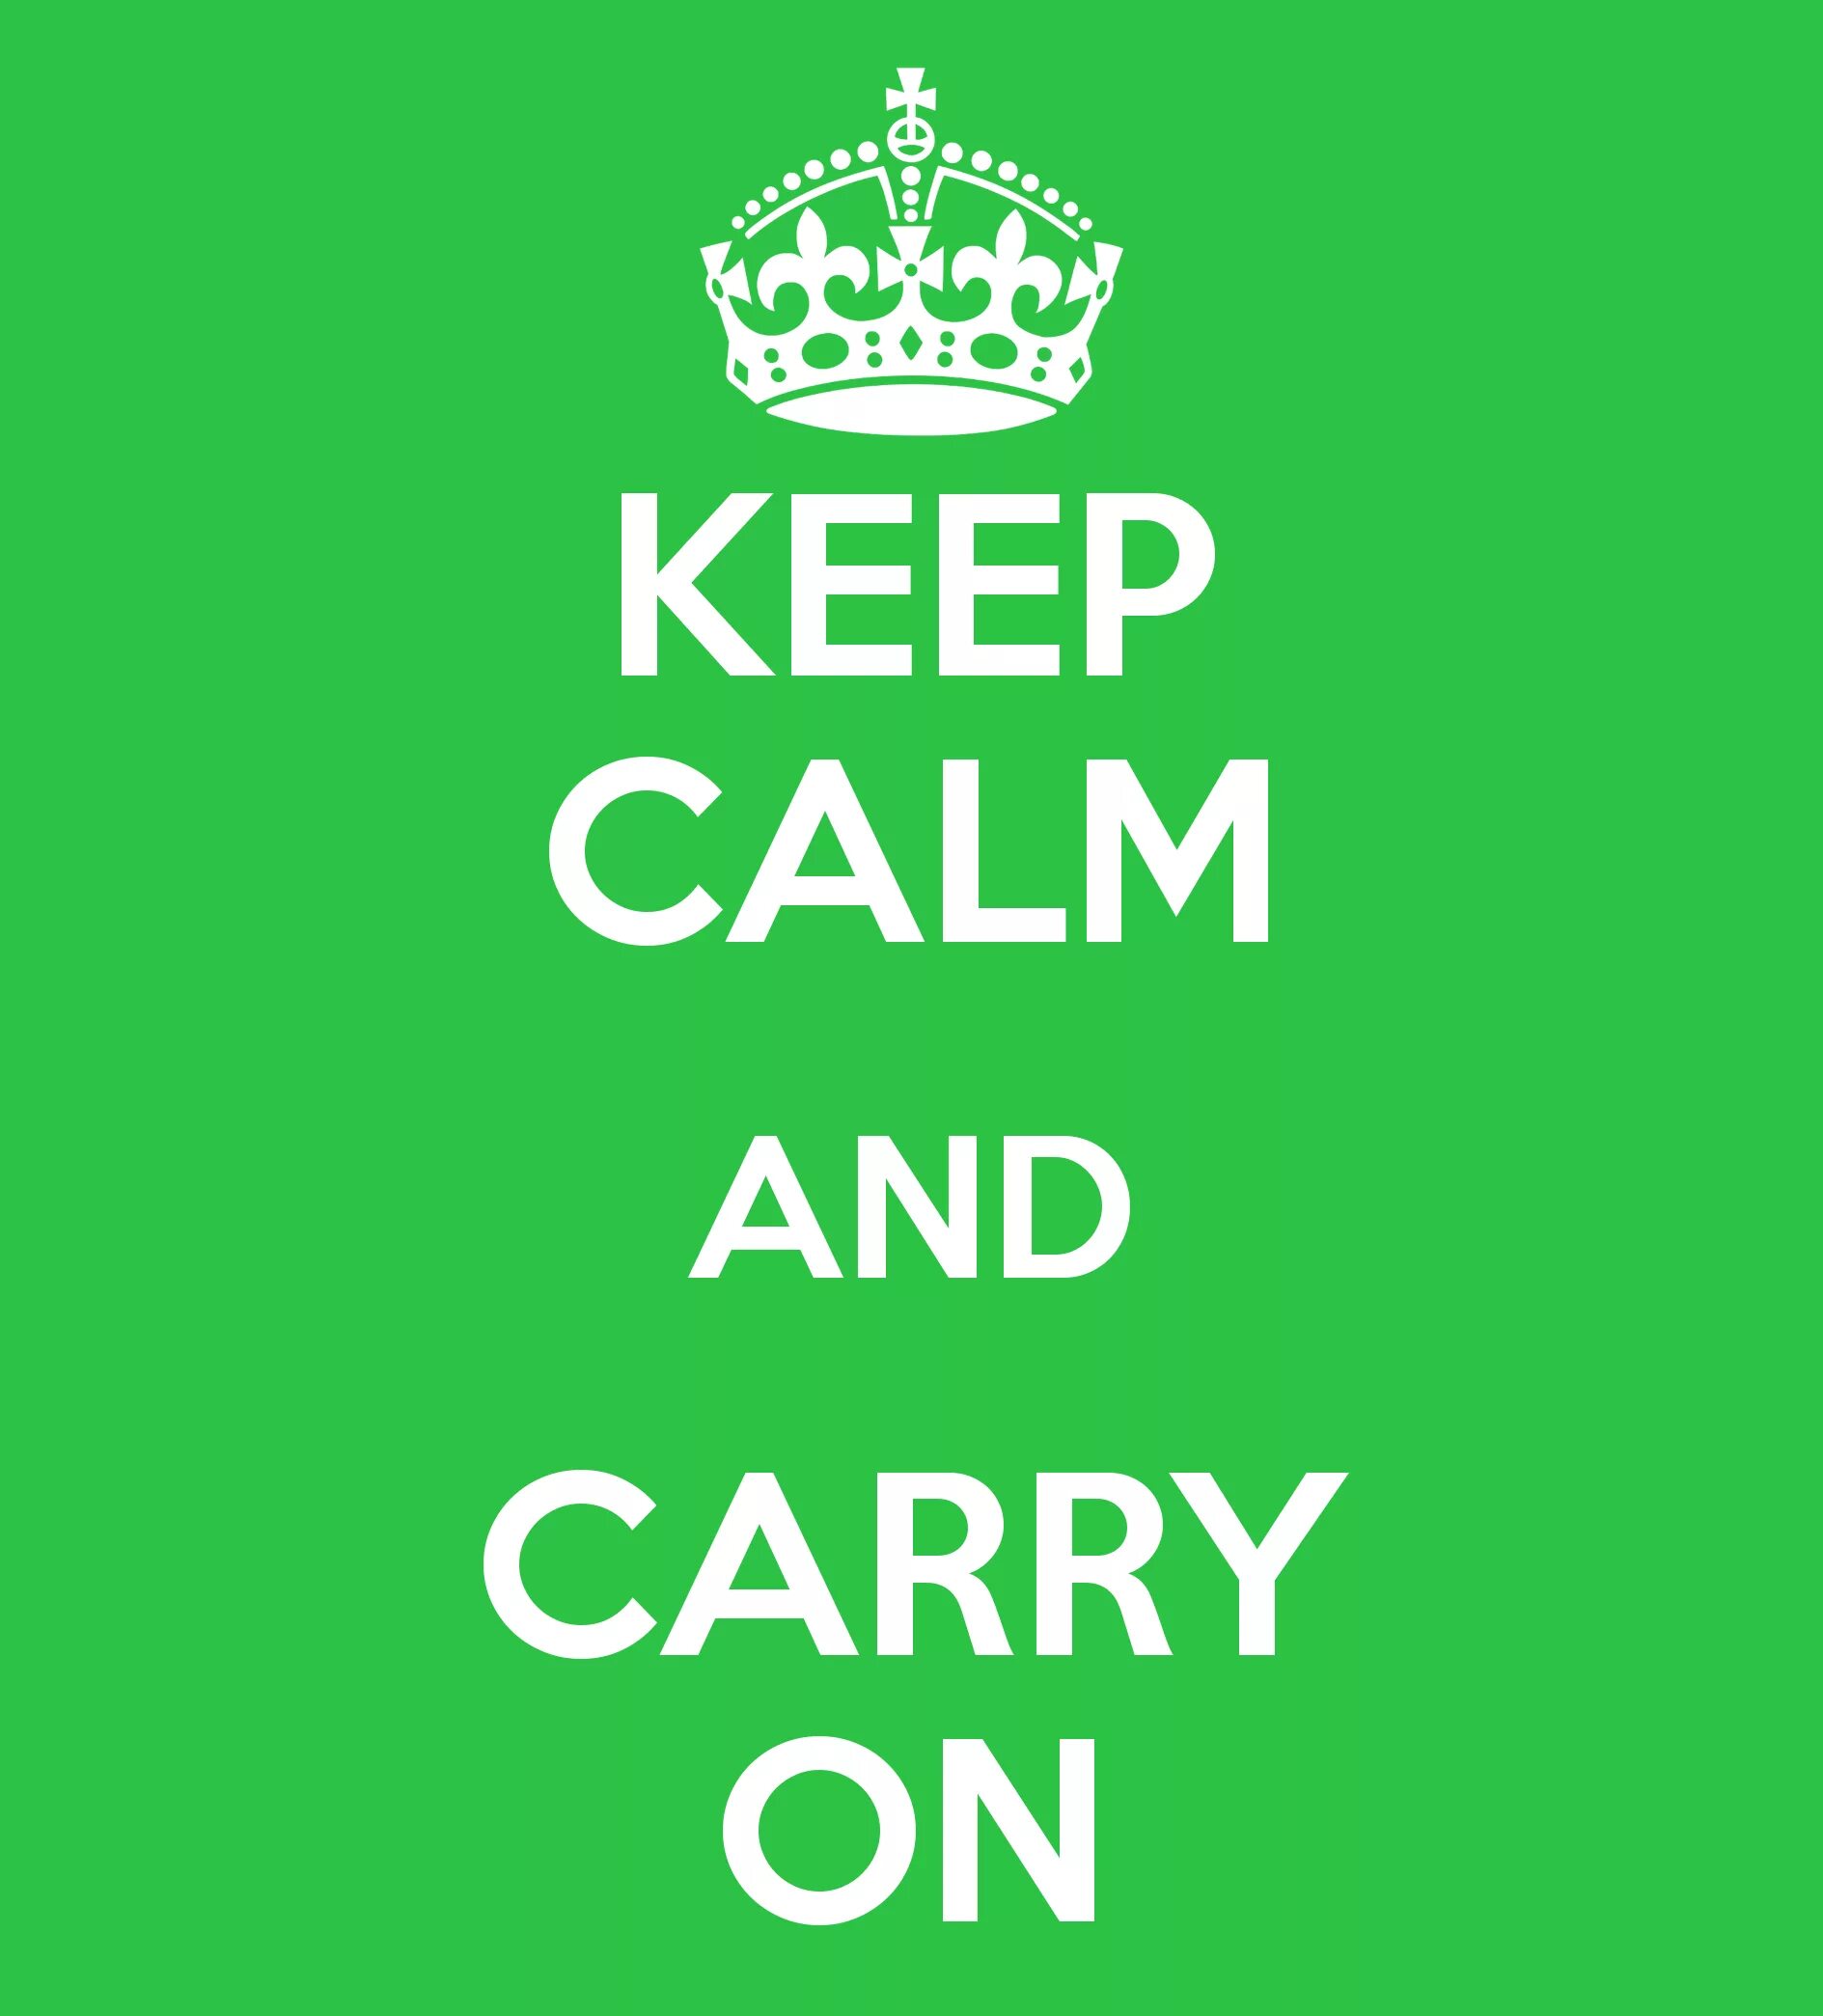 Keep Calm and carry on. Keep Calm and carry on корона. Сохраняйте спокойствие и продолжайте в том же духе. Keep Calm and carry on вектор. Keep download